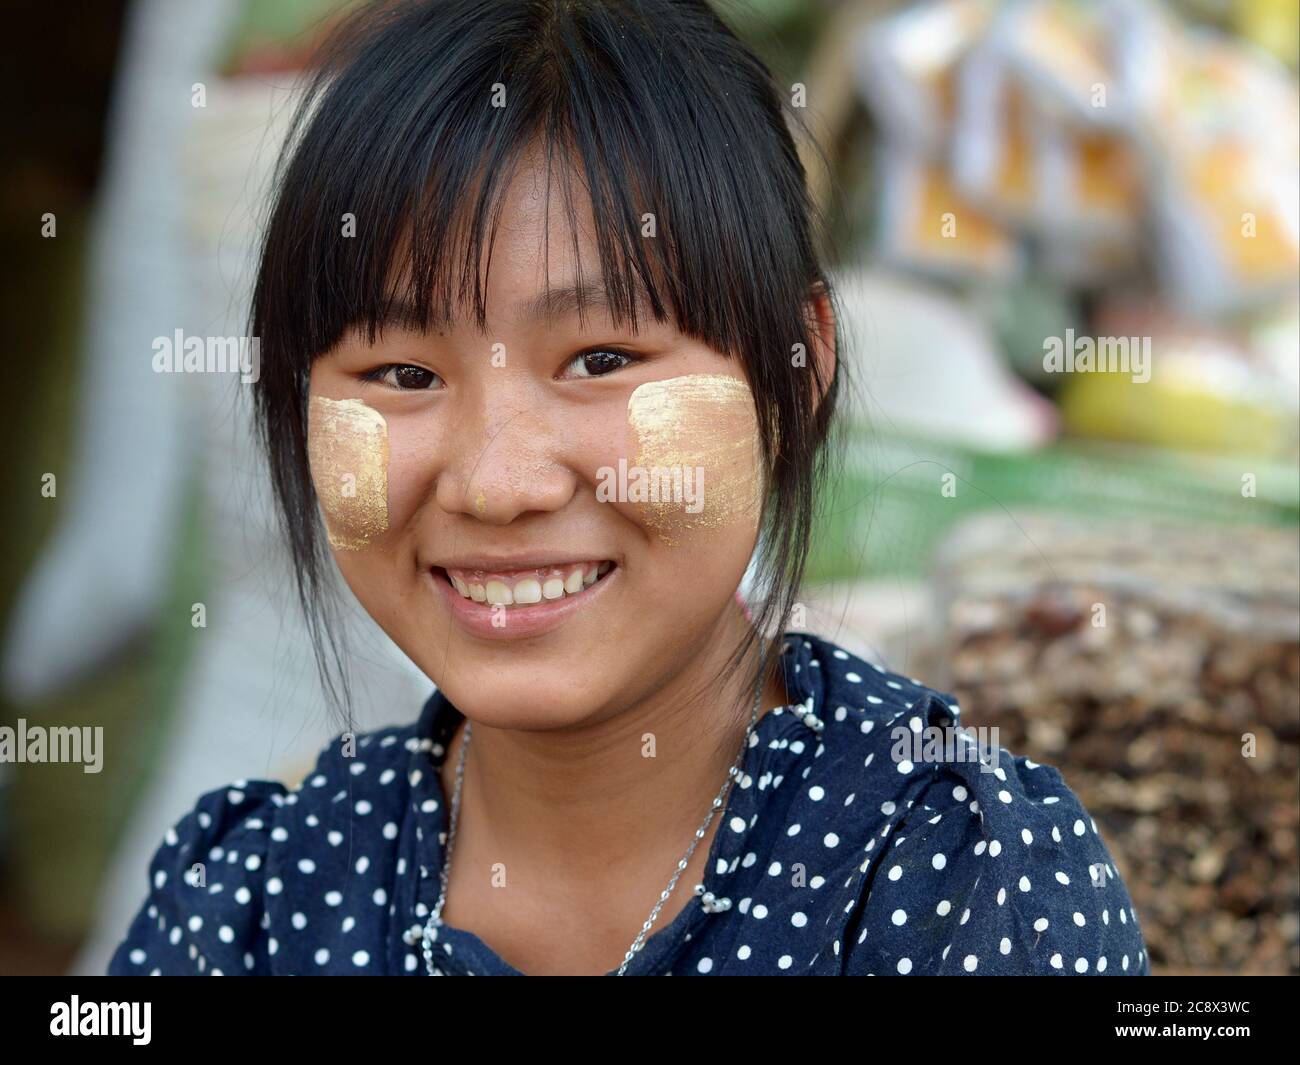 Jeune birmane avec des taches de soin naturel de la peau de thanaka sur ses joues sourit pour la caméra. Banque D'Images